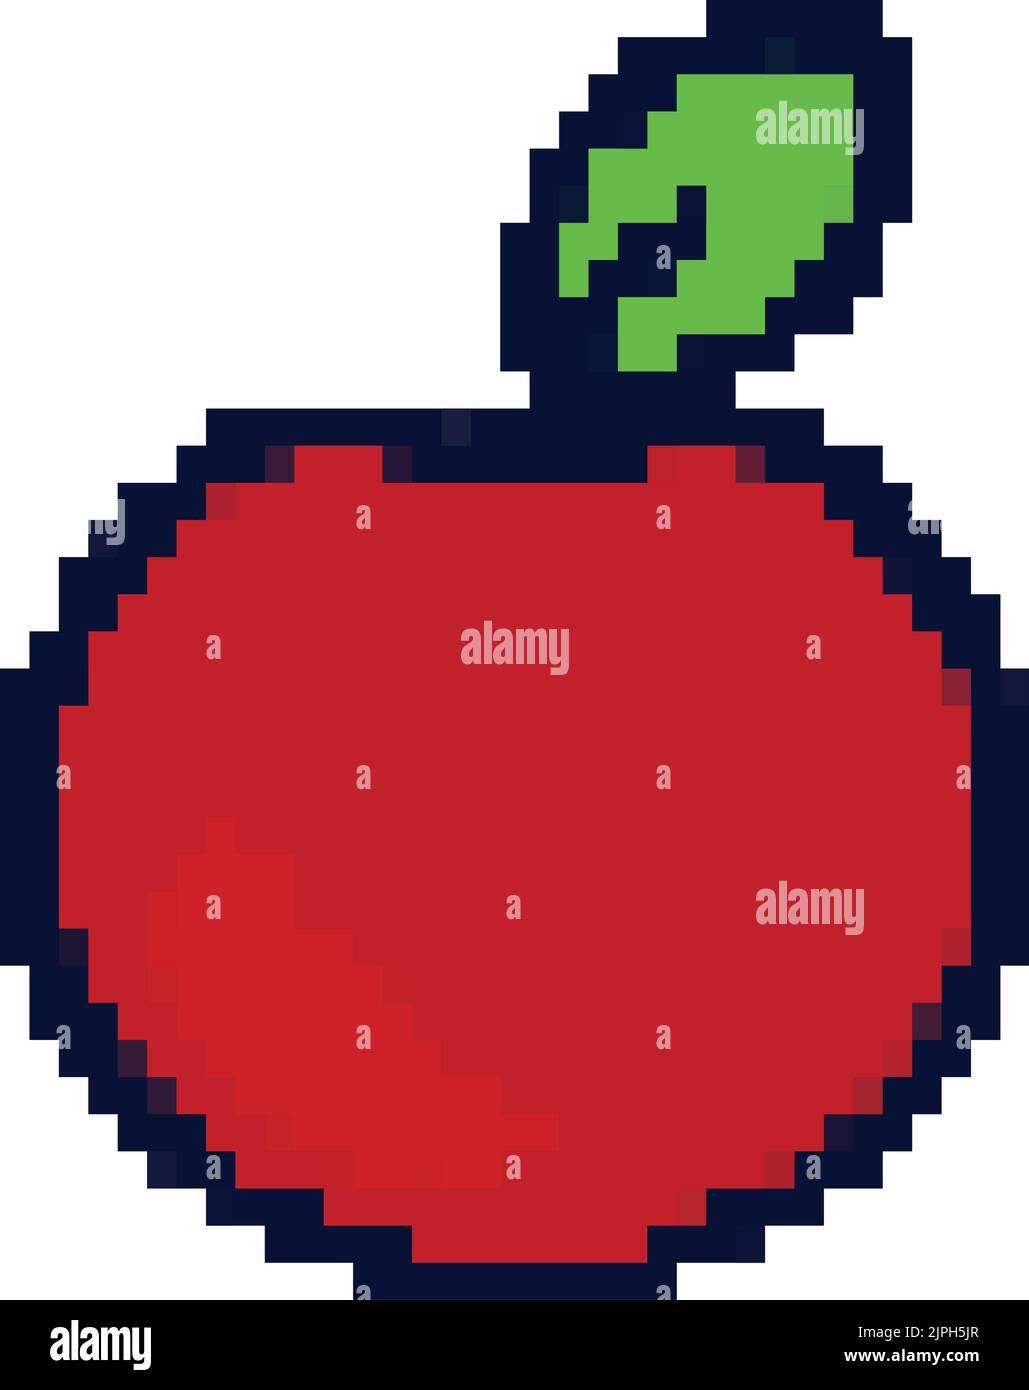 apple pixel art Stock Vector Image & Art - Alamy